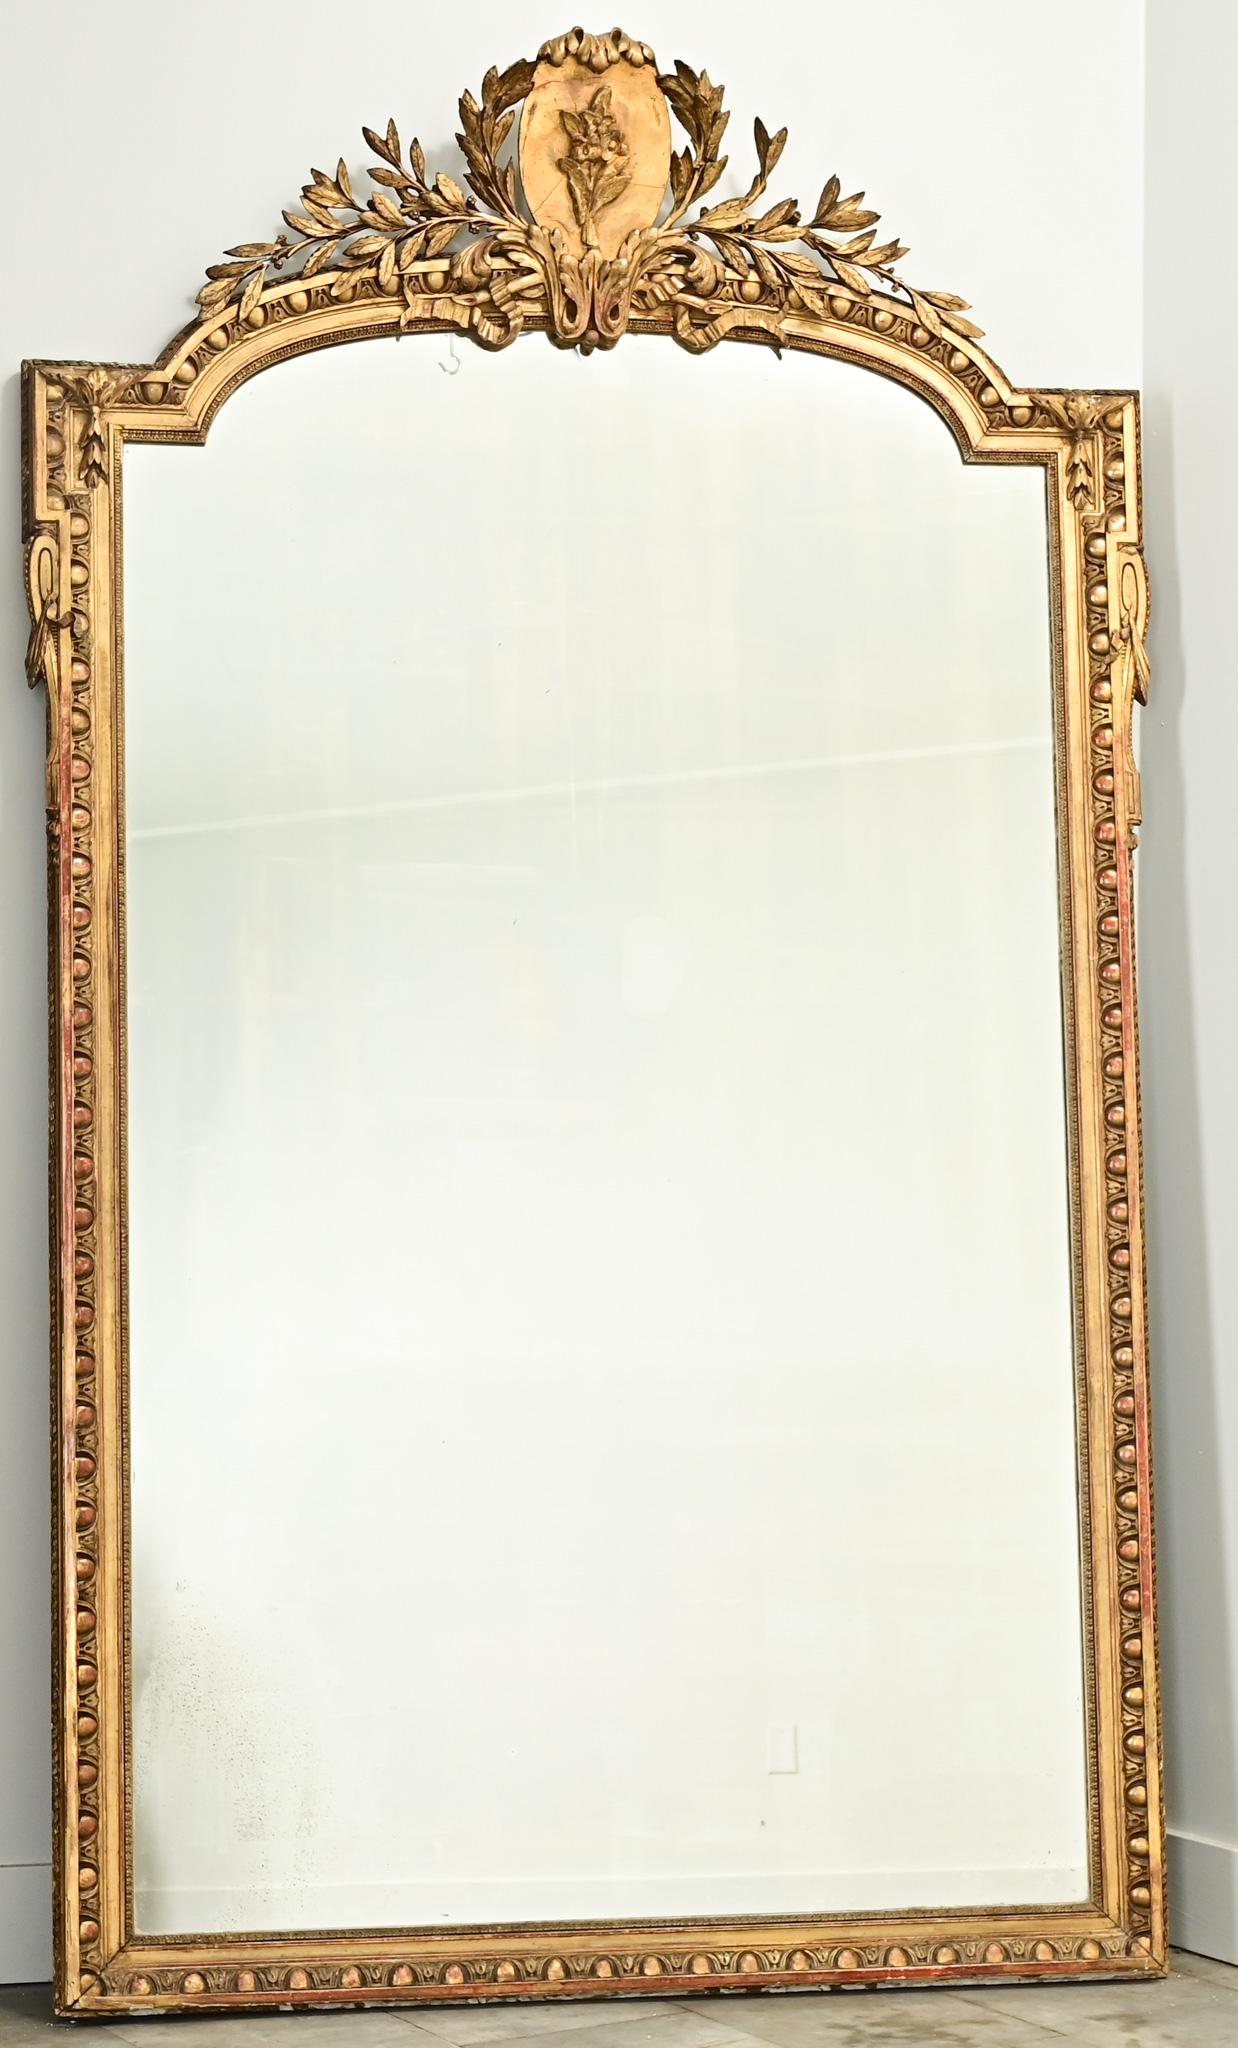 Grand miroir doré de style Louis XVI, réalisé en France au XVIIIe siècle. Le miroir est orné d'une crête en plâtre sculpté avec un cartouche floral au centre et des branches de laurier. La partie centrale du cadre est arrondie avec des coins carrés